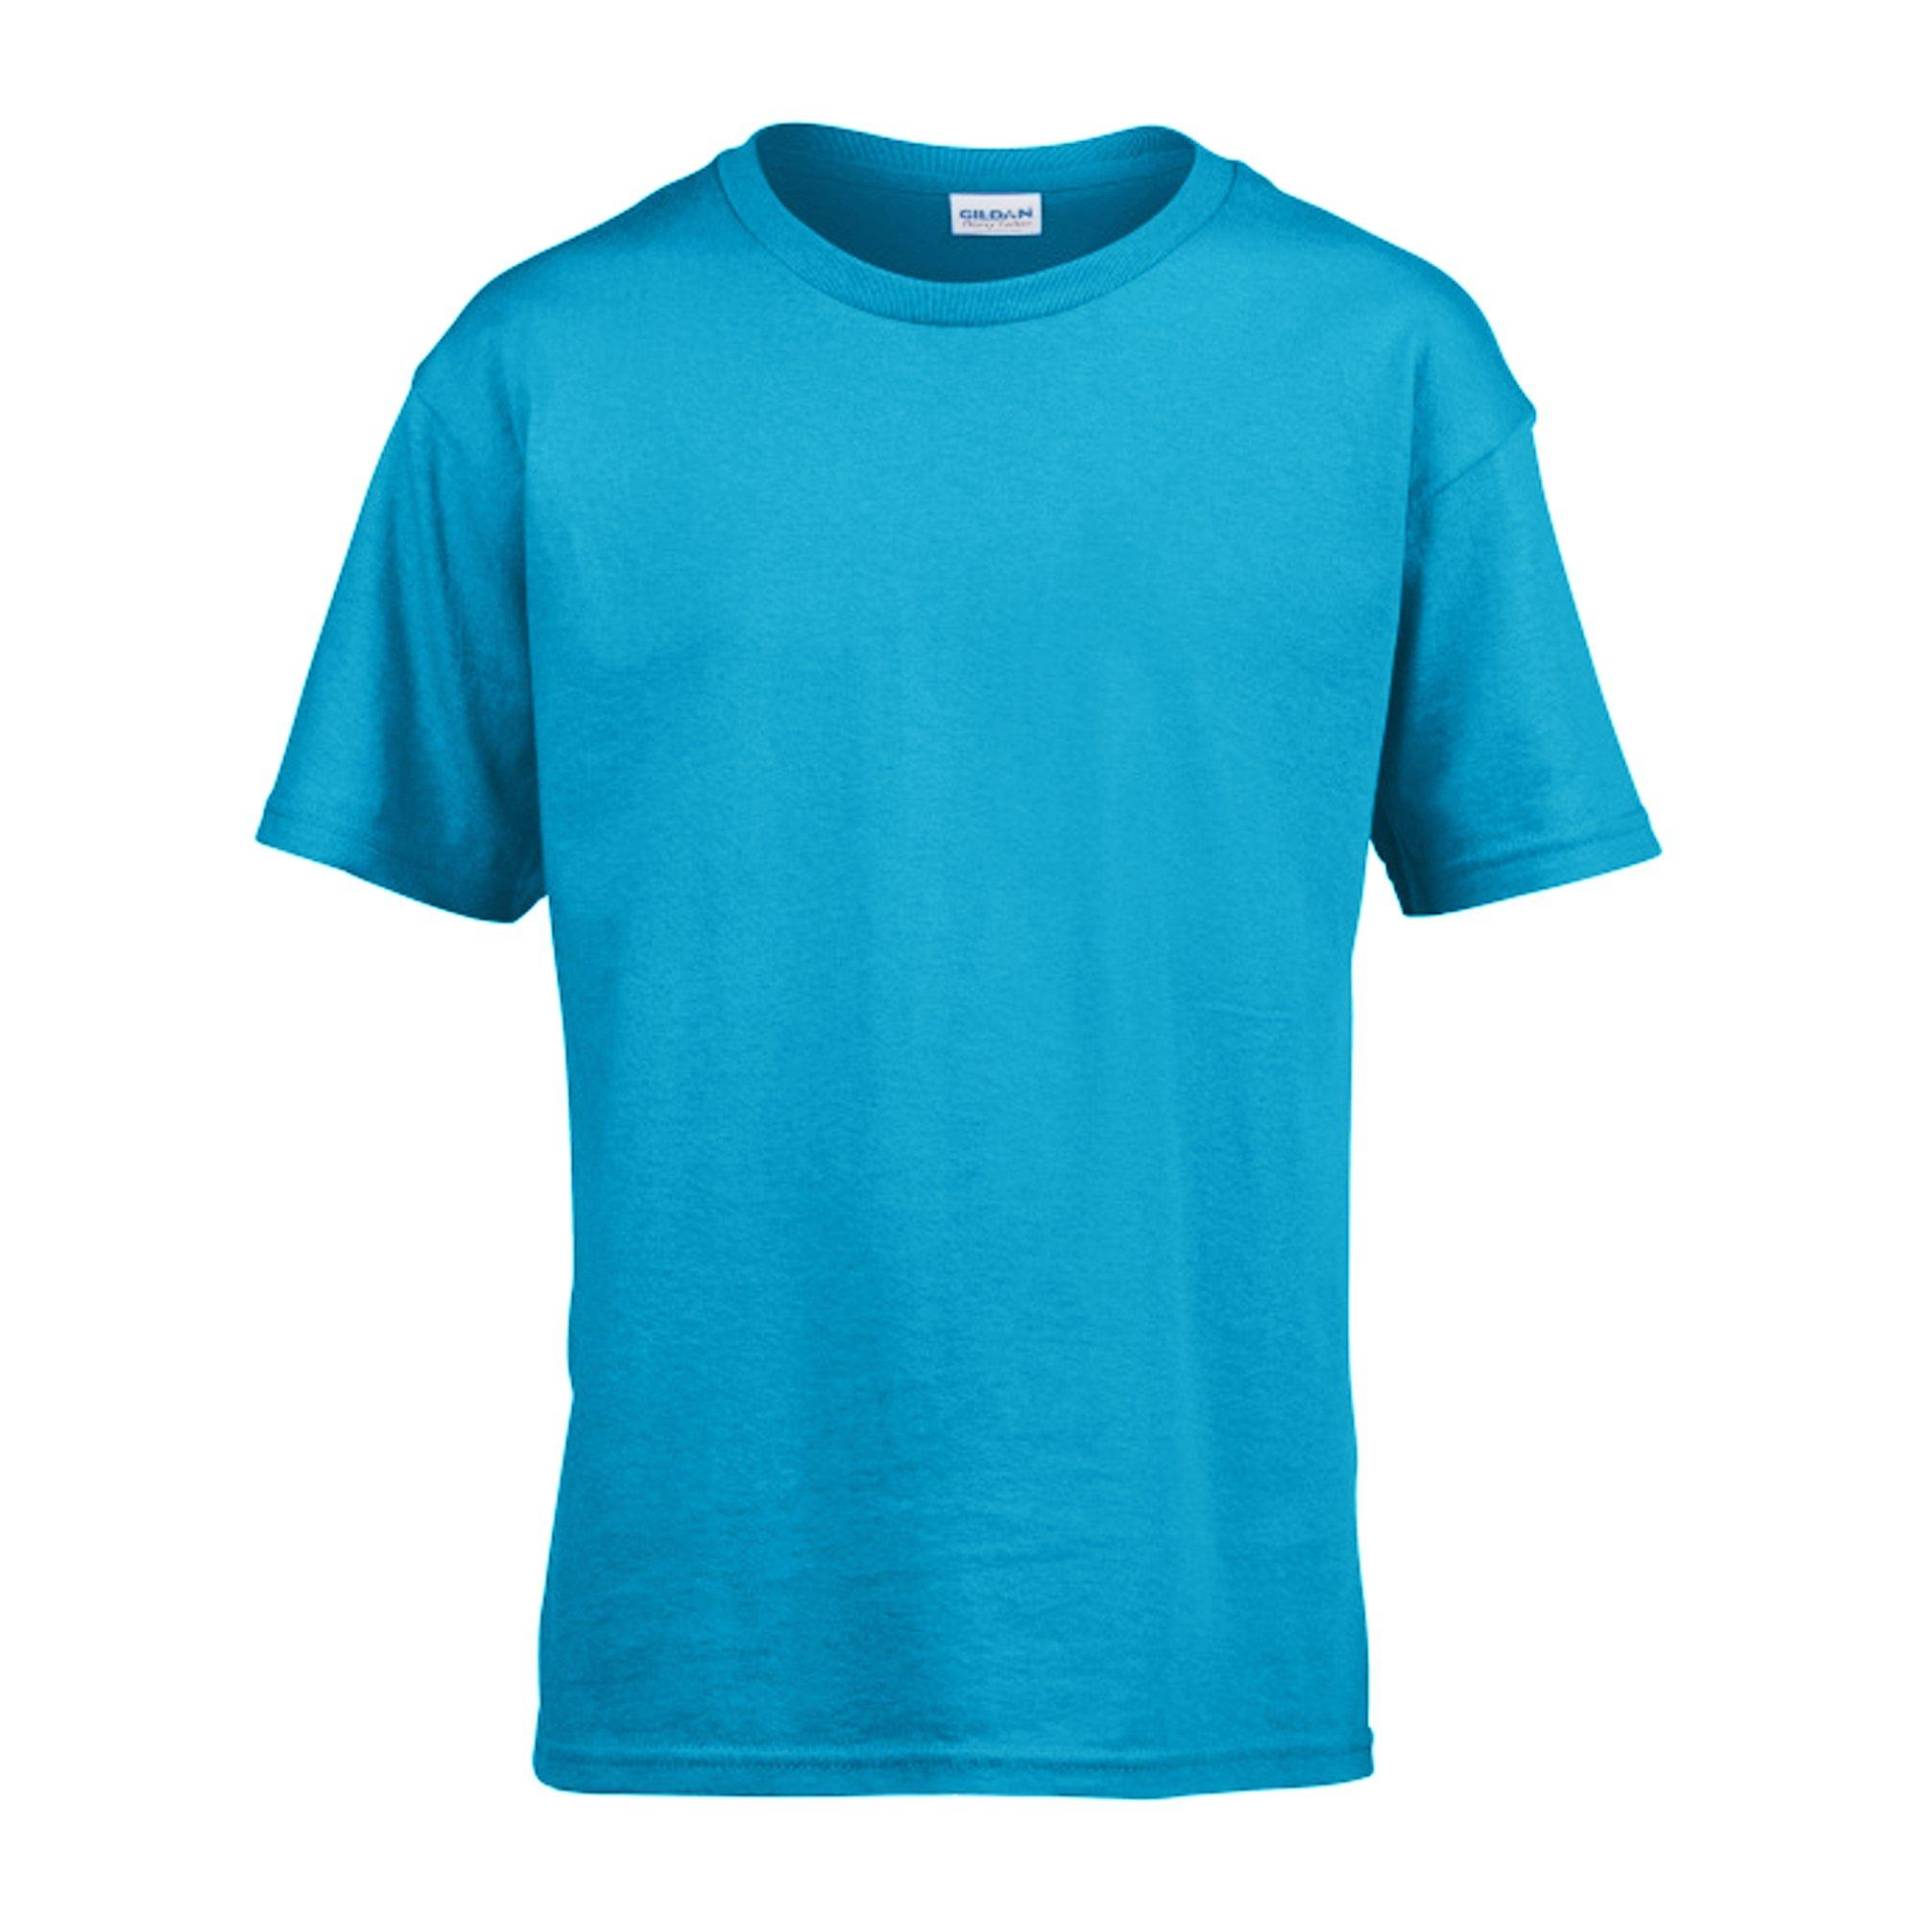 Softstyle Tshirt Herren Himmelblau L von Gildan